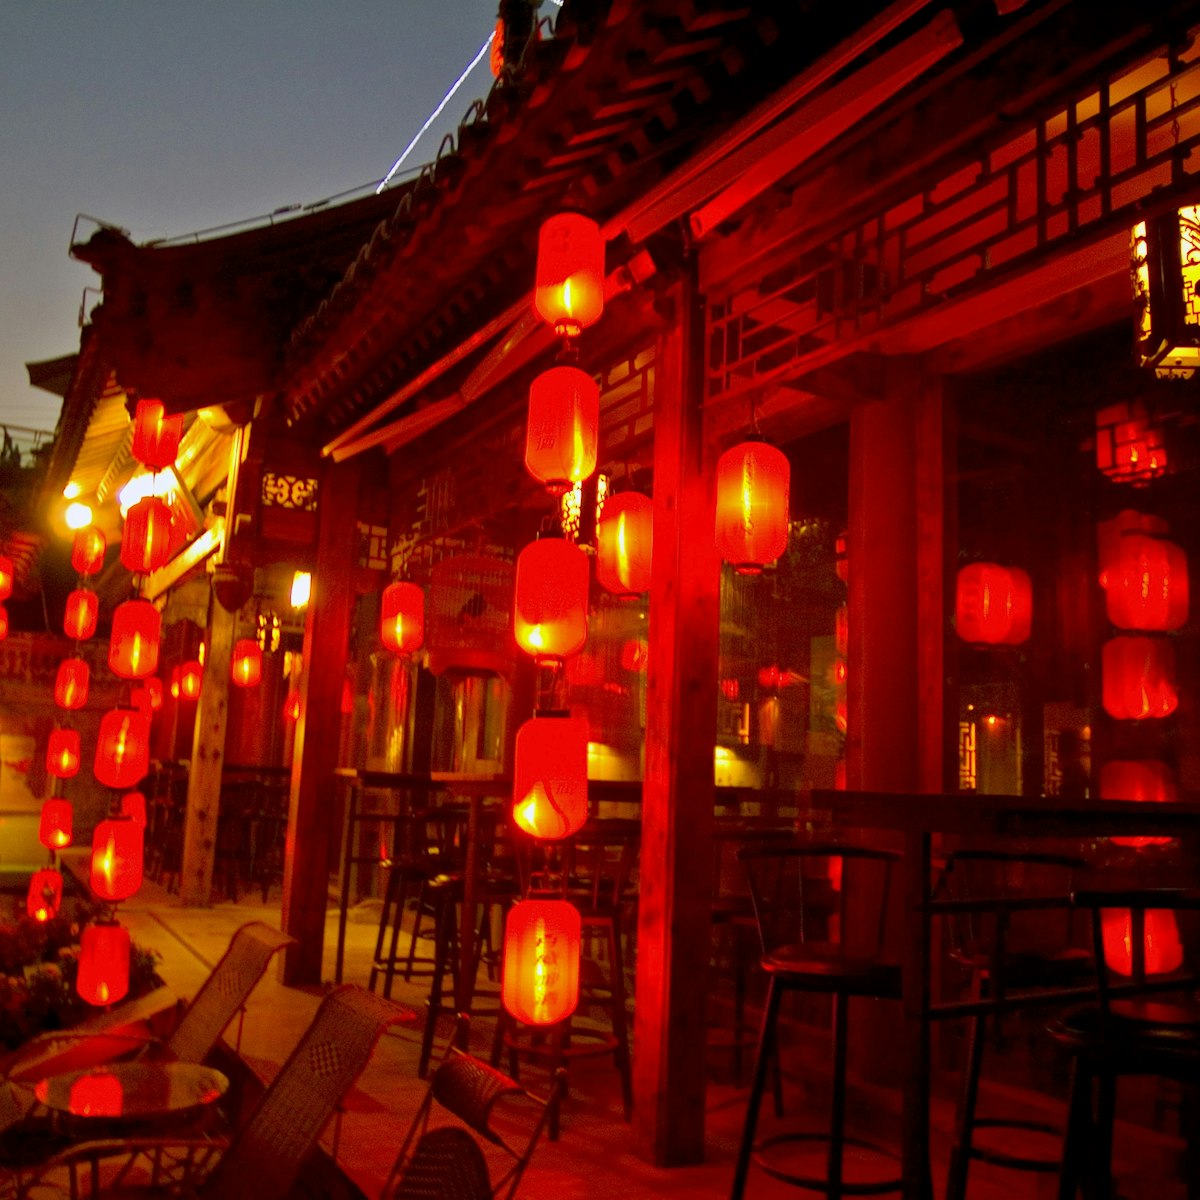 Lanterns at Qianhai Dongyuan/ Qianhai Beiyan (Lotus Lane) also known as The Back Lakes.